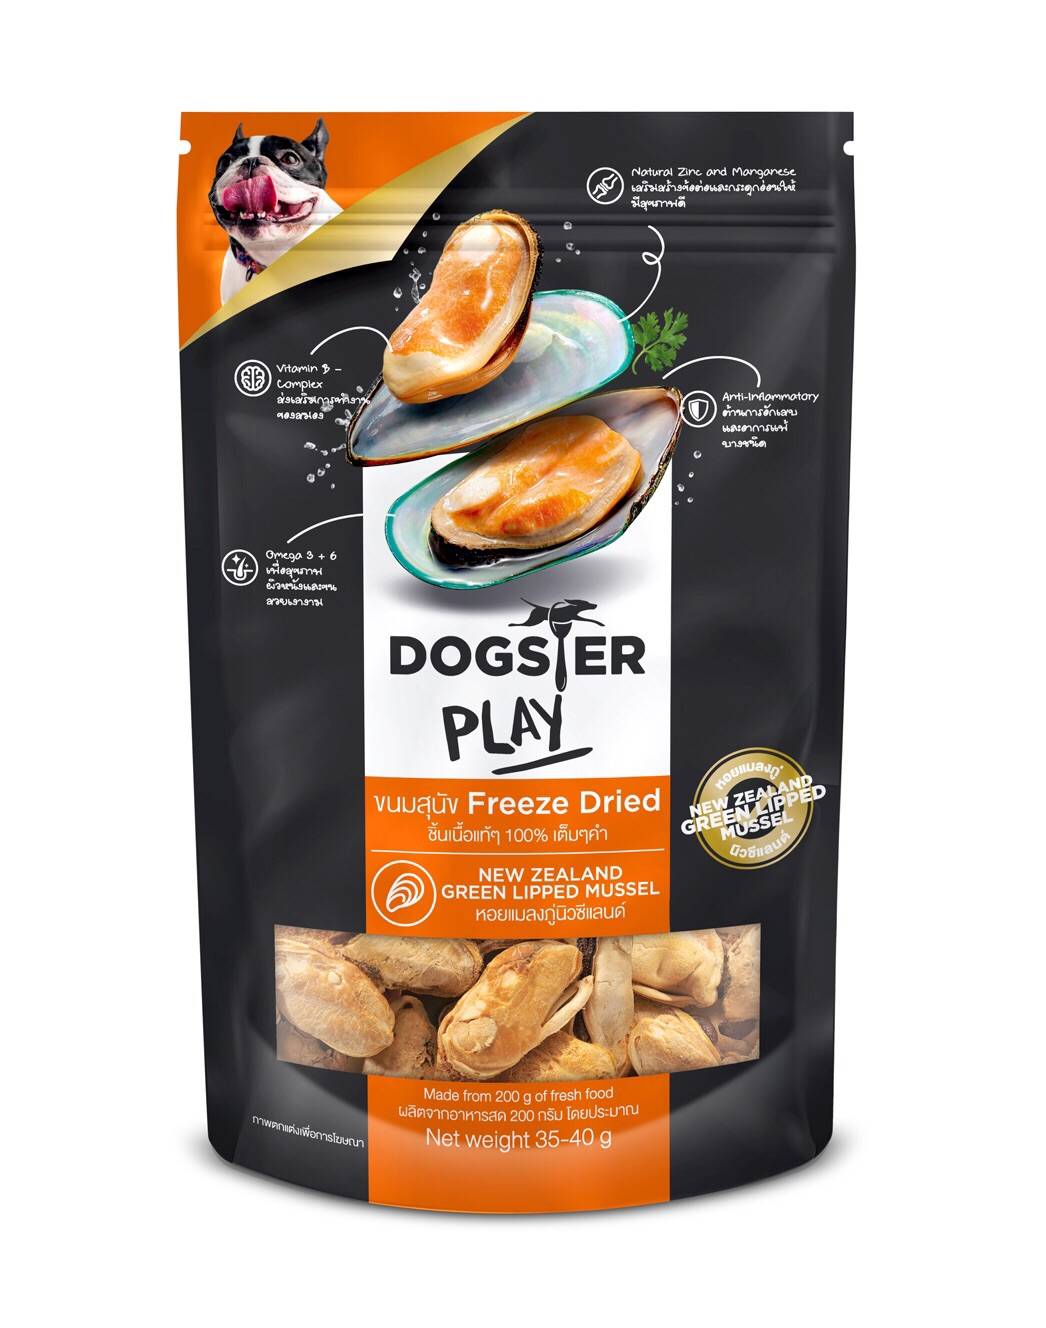 Dogster Play ขนมและท็อปปิ้งฟรีซดรายสำหรับสุนัขและแมว รสหอยแมลงภู่นิวซีแลนด์ [Dog food, treat, and toppers]40g